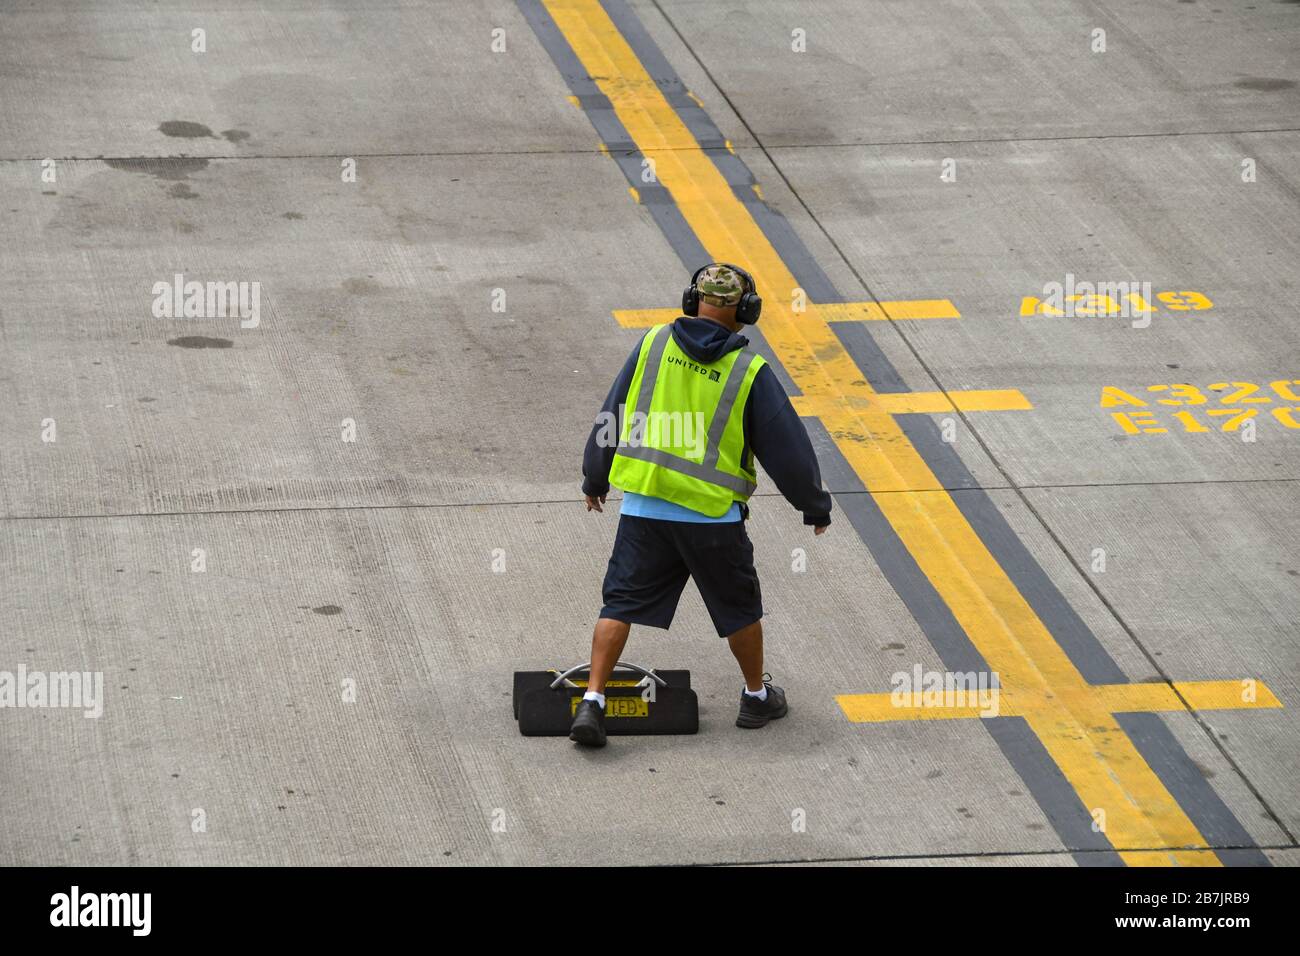 AEROPORTO DI SEATTLE TACOMA, WA, USA - GIUGNO 2018: Lavoratore dell'aeroporto con gilet ad alta visibilità e protezioni acustiche all'aeroporto di Seattle Tacoma, e una serie di cunei per ruote Foto Stock